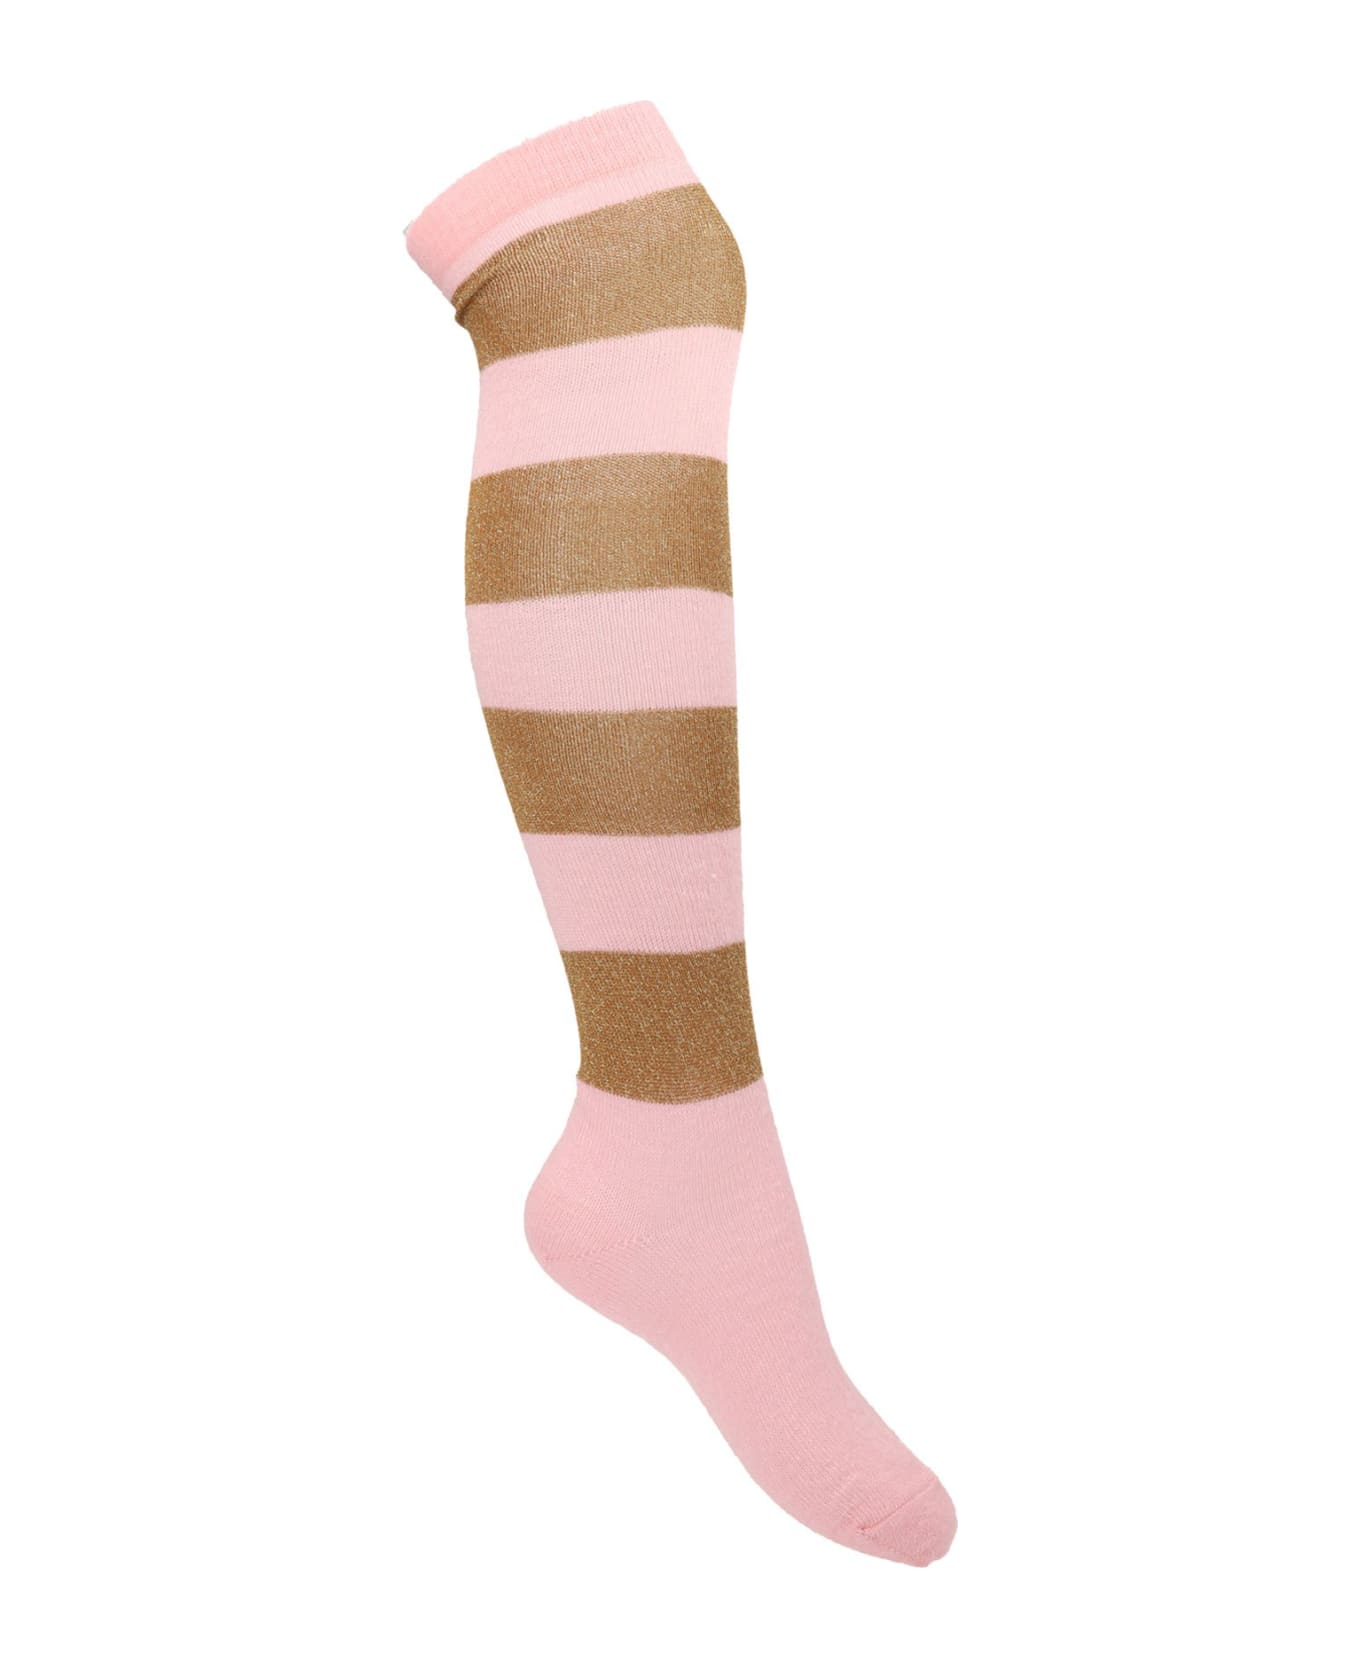 Marni Striped Socks - Pink